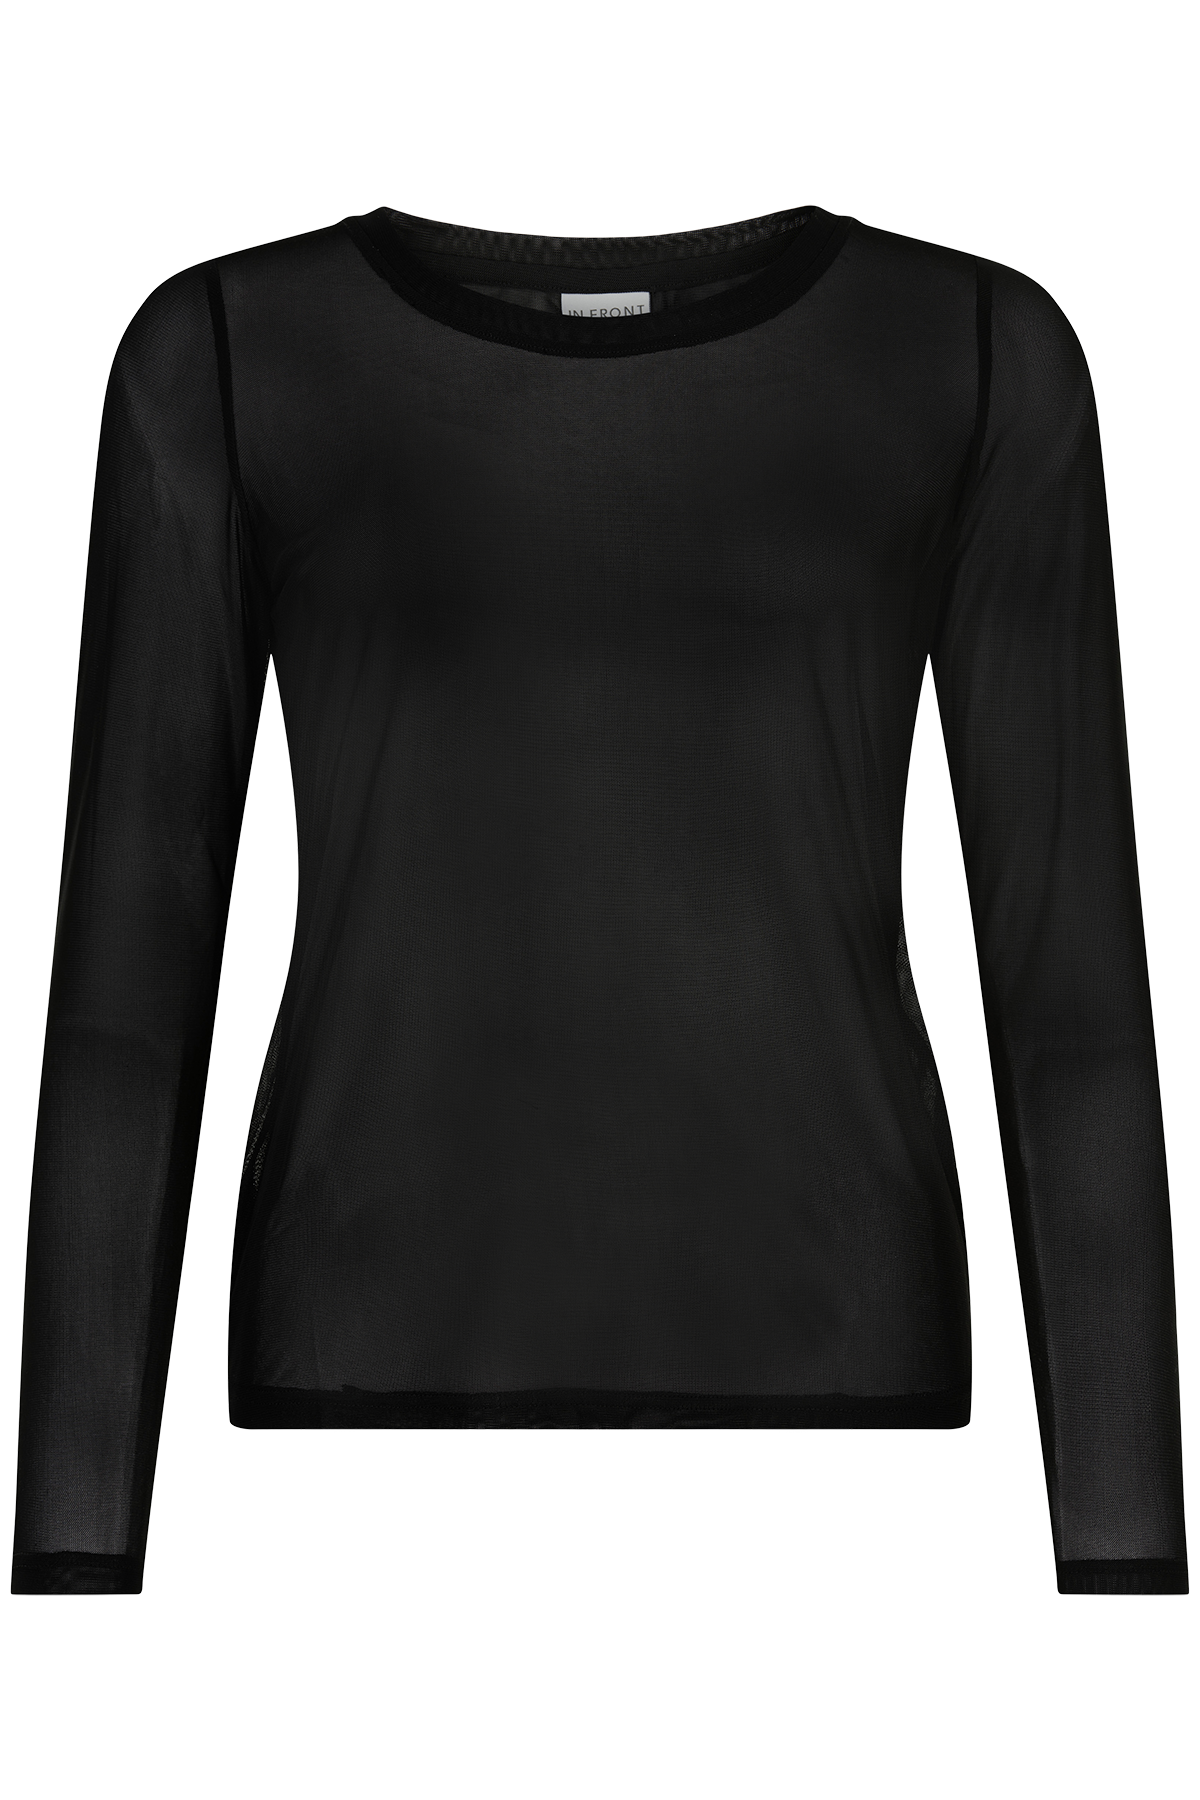 Se IN FRONT Gro Mesh T-shirt, Farve: Black, Størrelse: XXL, Dame hos Infront Women